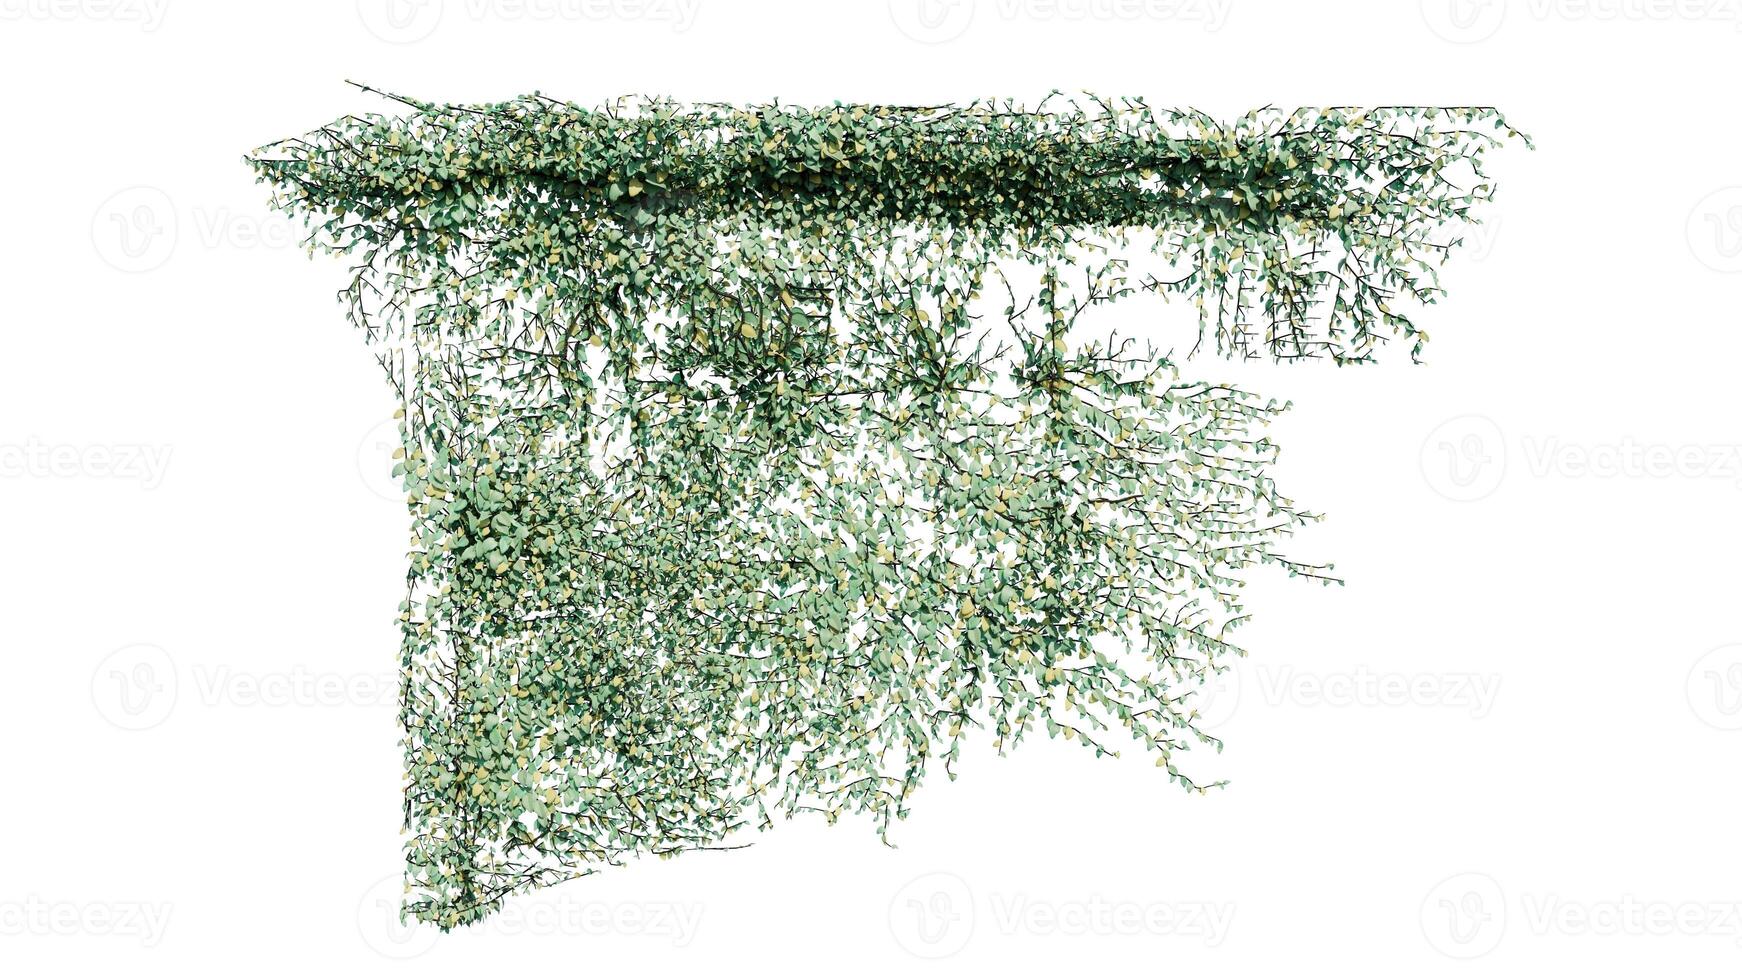 växt och blomma vin grön murgröna löv tropisk hängande, klättrande isolerat på transparent bakgrund foto